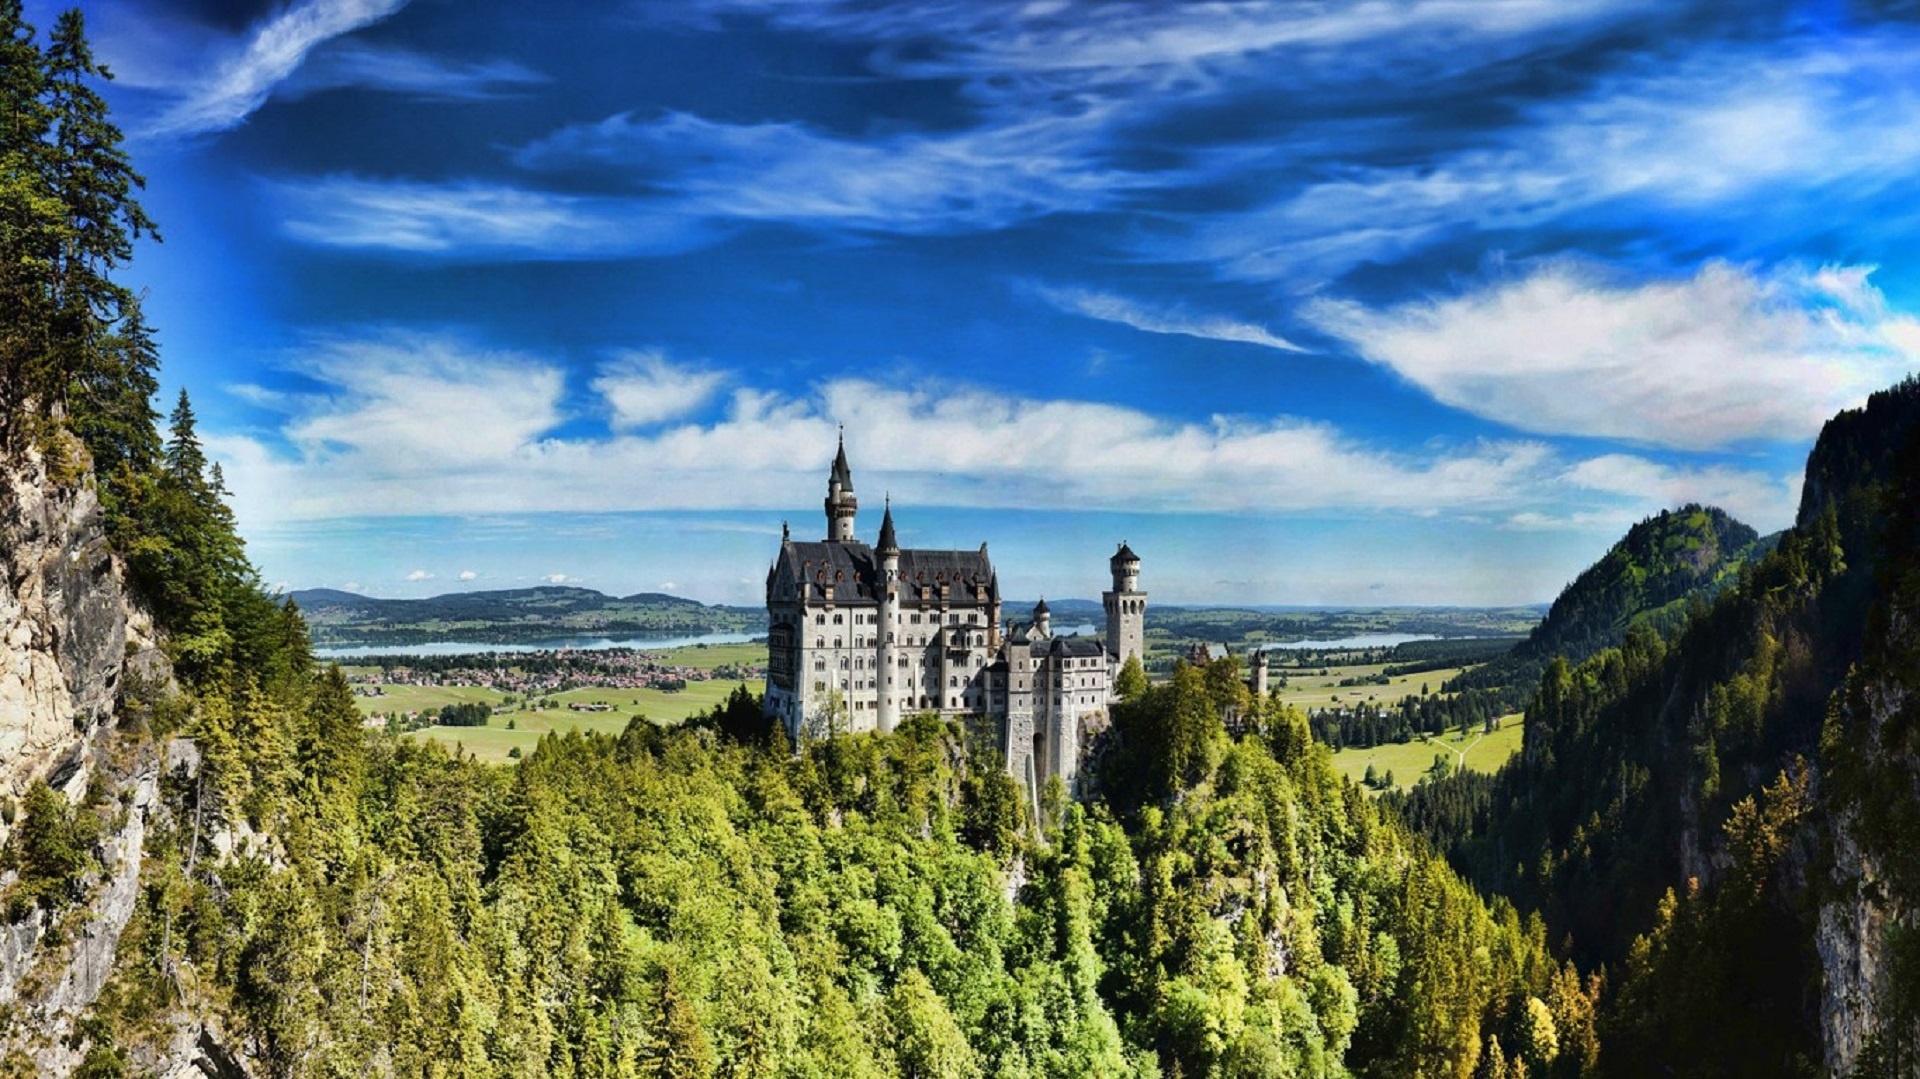 Bavarian Castle Neuschwanstein